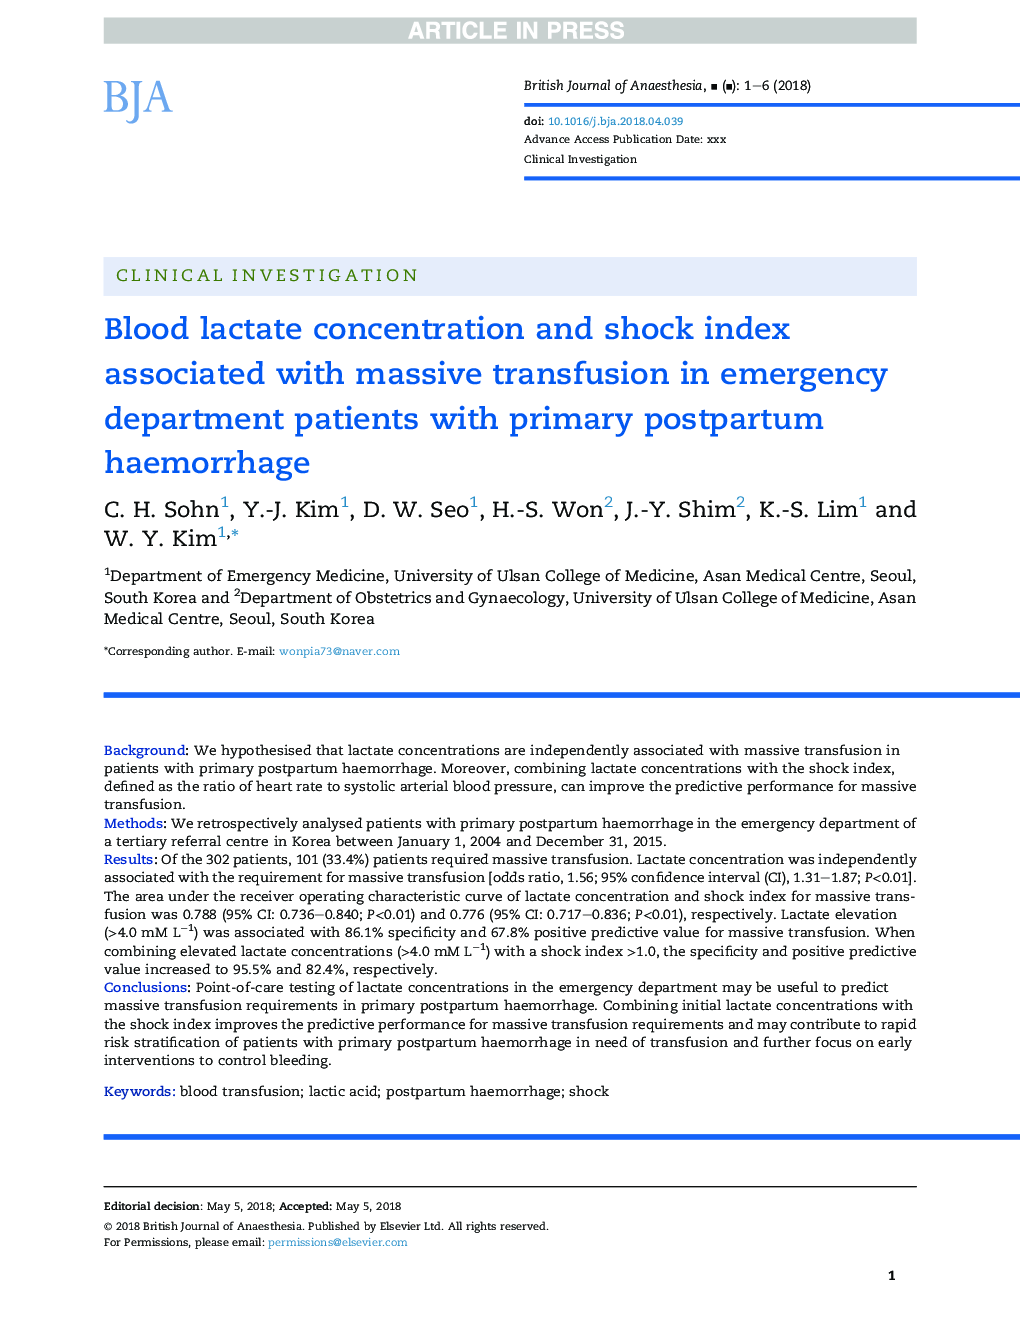 غلظت لاکتات خون و شاخص شوک مرتبط با انتقال خون عظیم در بیماران بخش اورژانس با خونریزی اولیه پس از زایمان